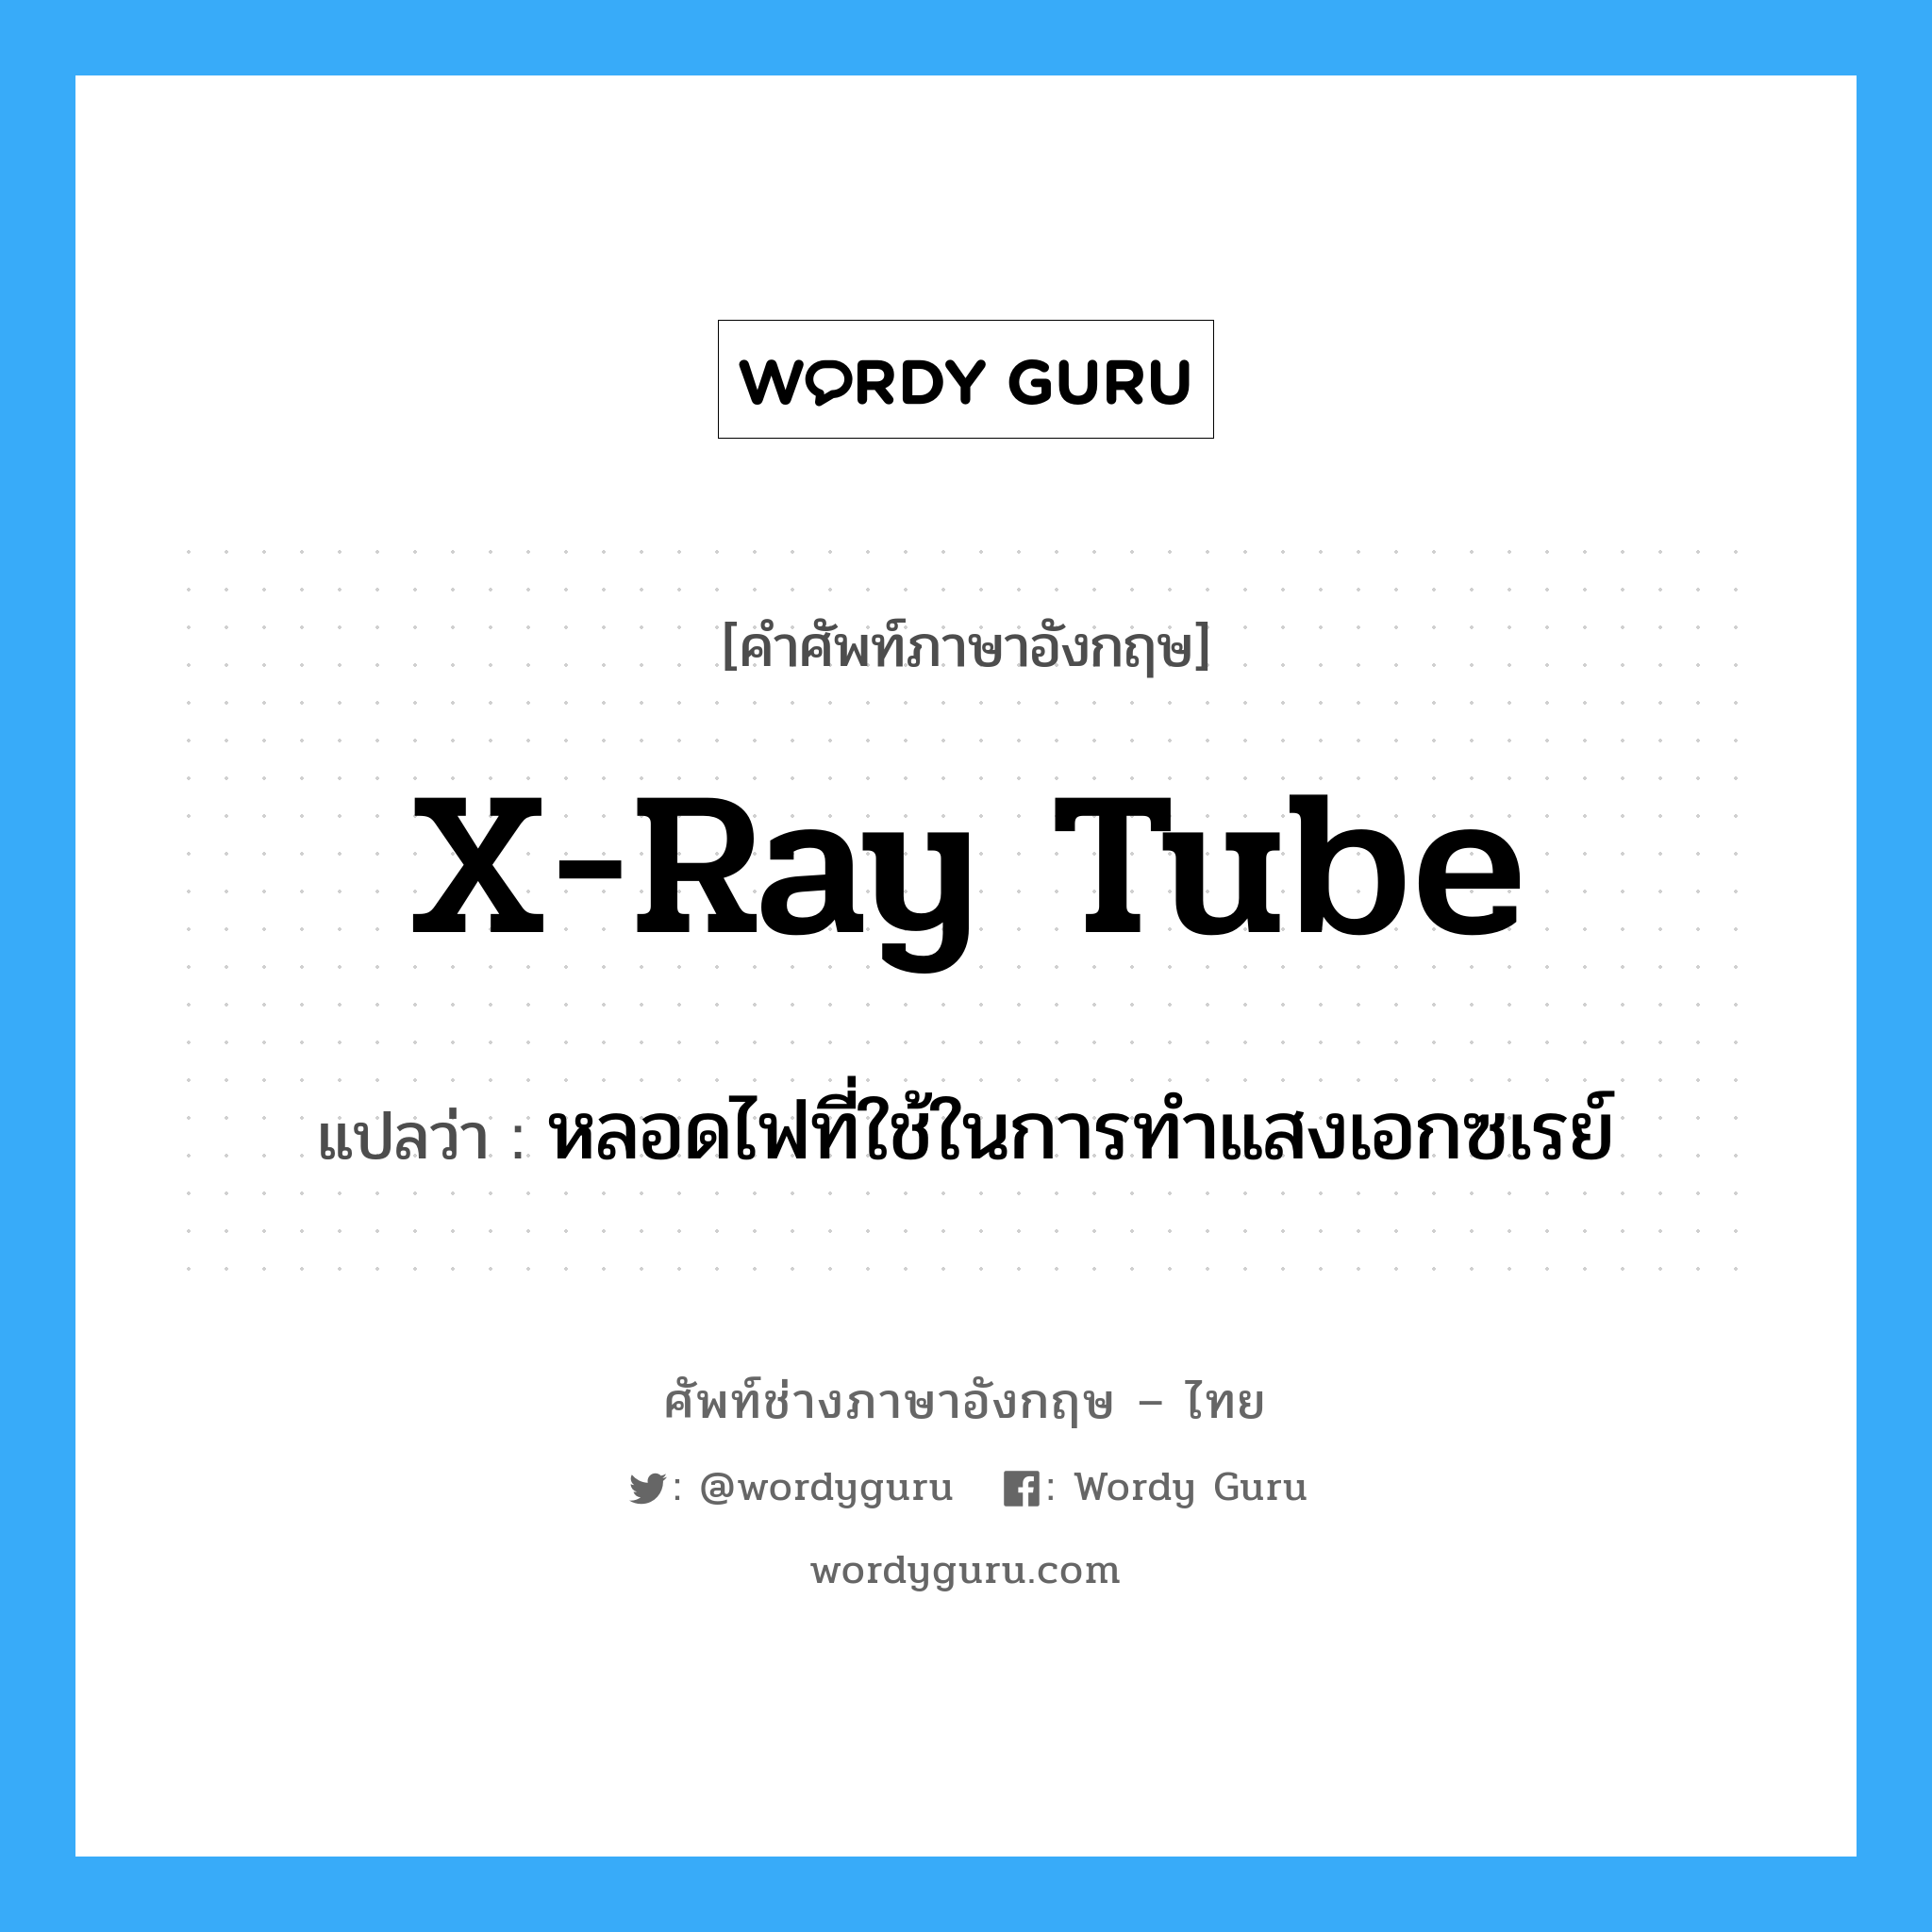 X-ray tube แปลว่า?, คำศัพท์ช่างภาษาอังกฤษ - ไทย X-ray tube คำศัพท์ภาษาอังกฤษ X-ray tube แปลว่า หลอดไฟที่ใช้ในการทำแสงเอกซเรย์